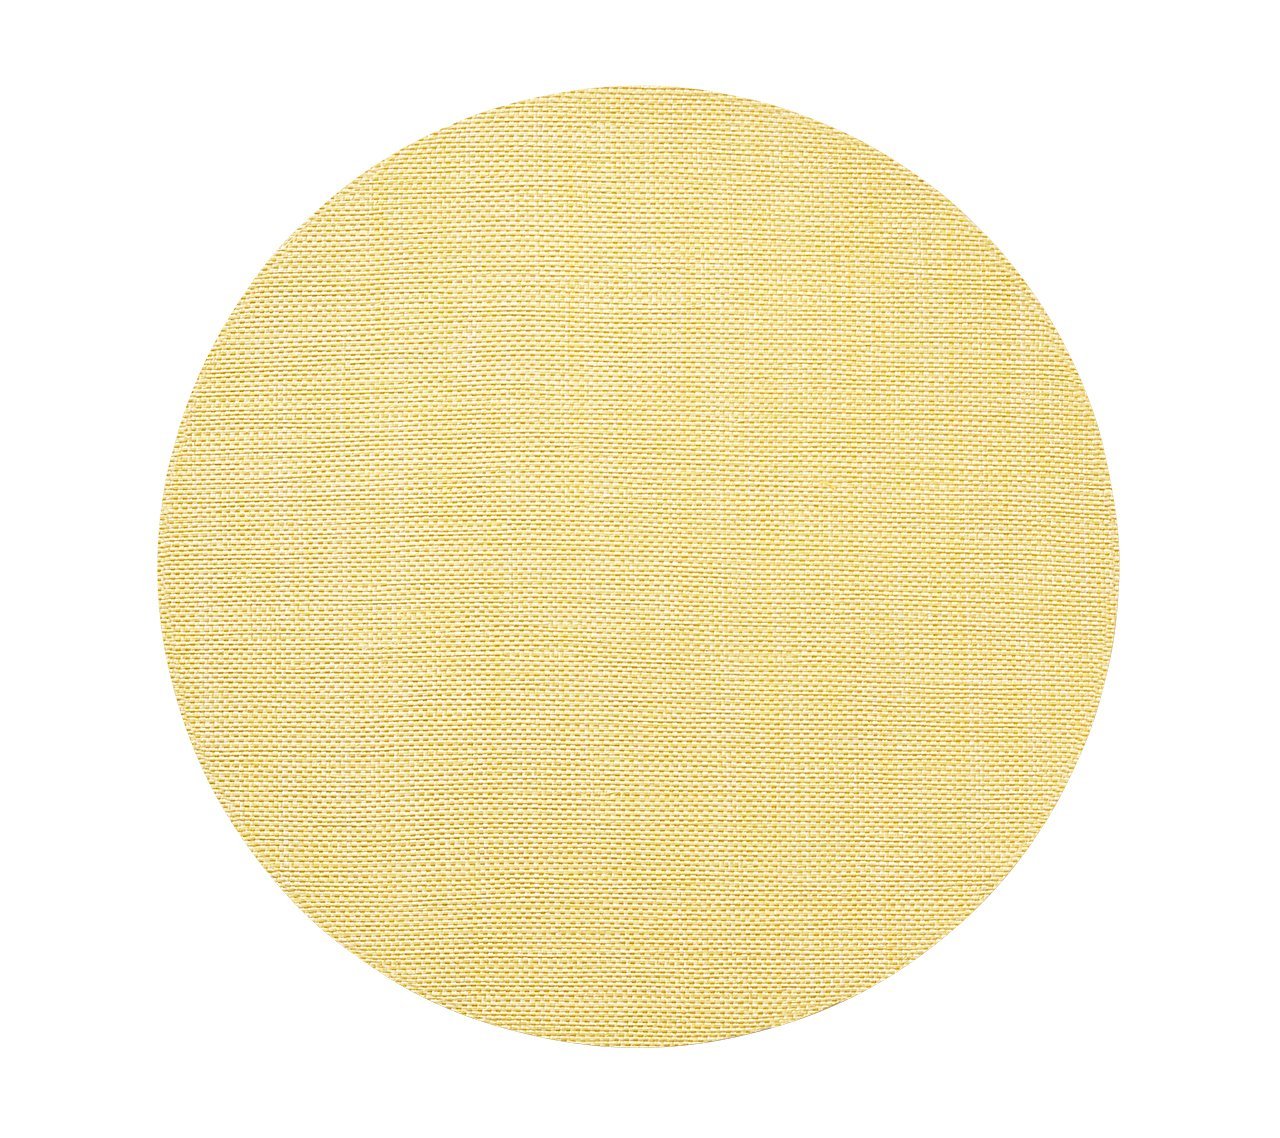 Portofino Placemat in Yellow, Set of 4 by Kim Seybert 